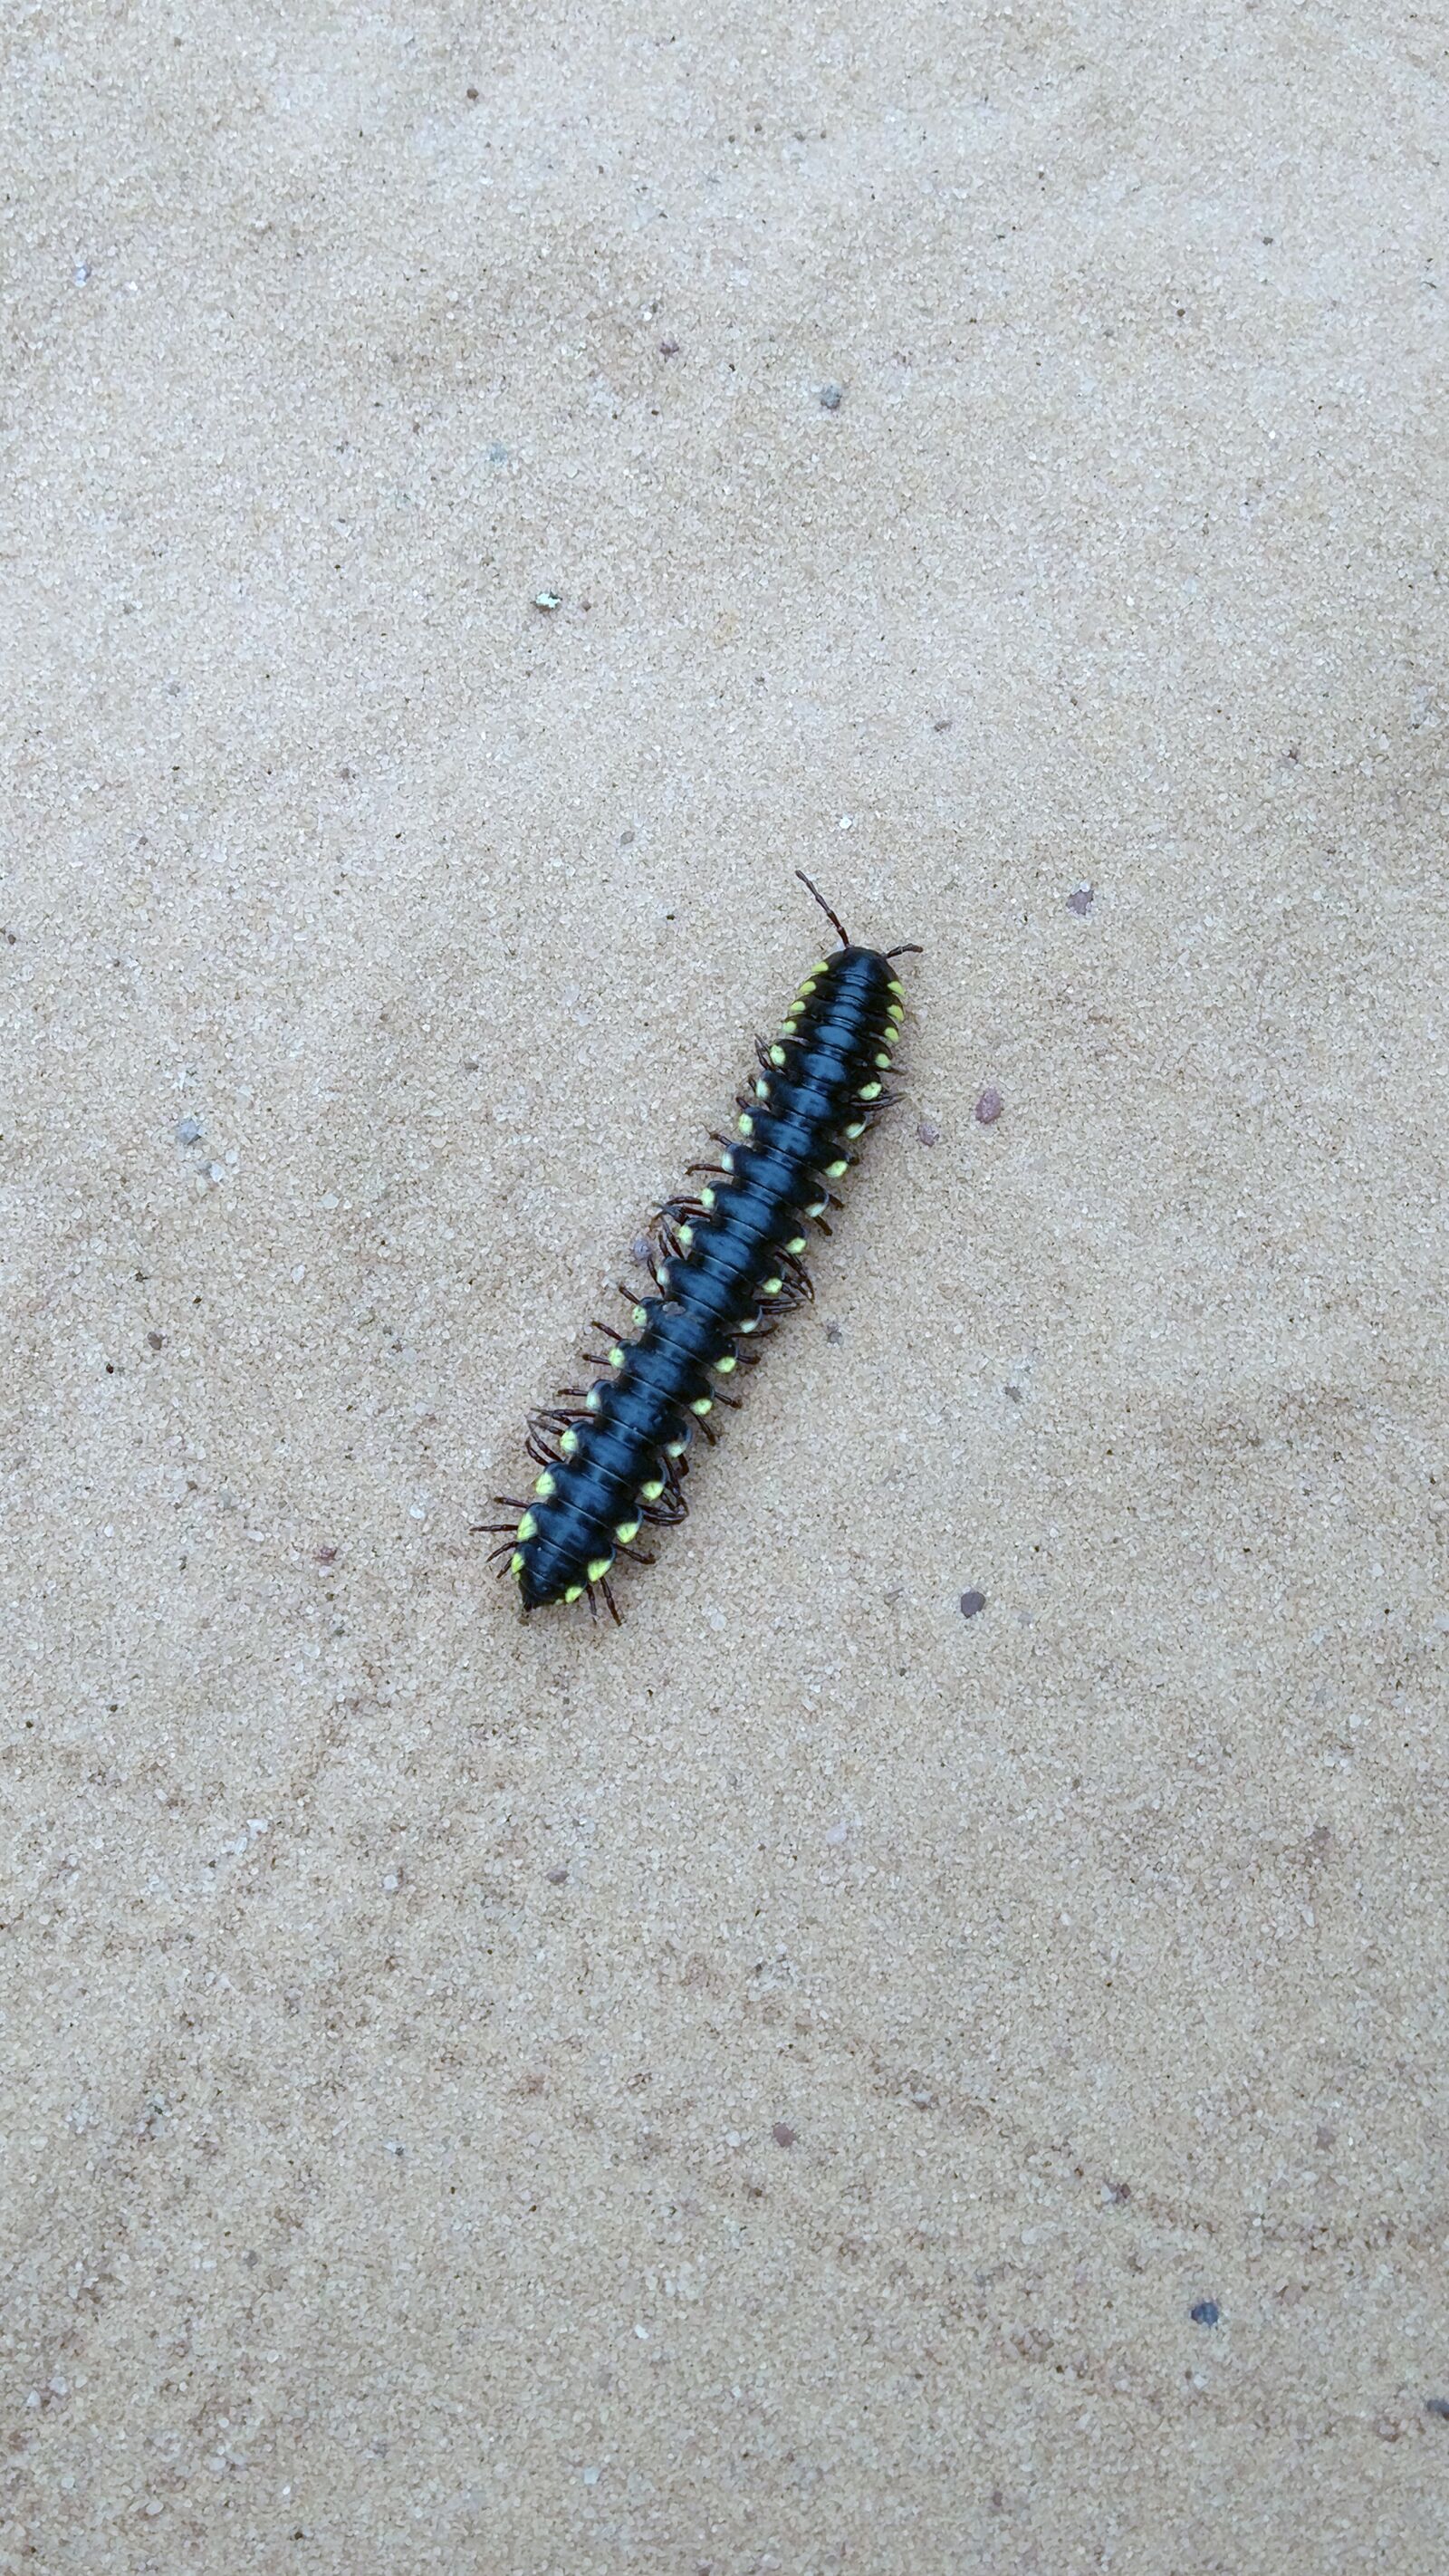 Xiaomi MIX sample photo. Caterpillar, insect, nature photography